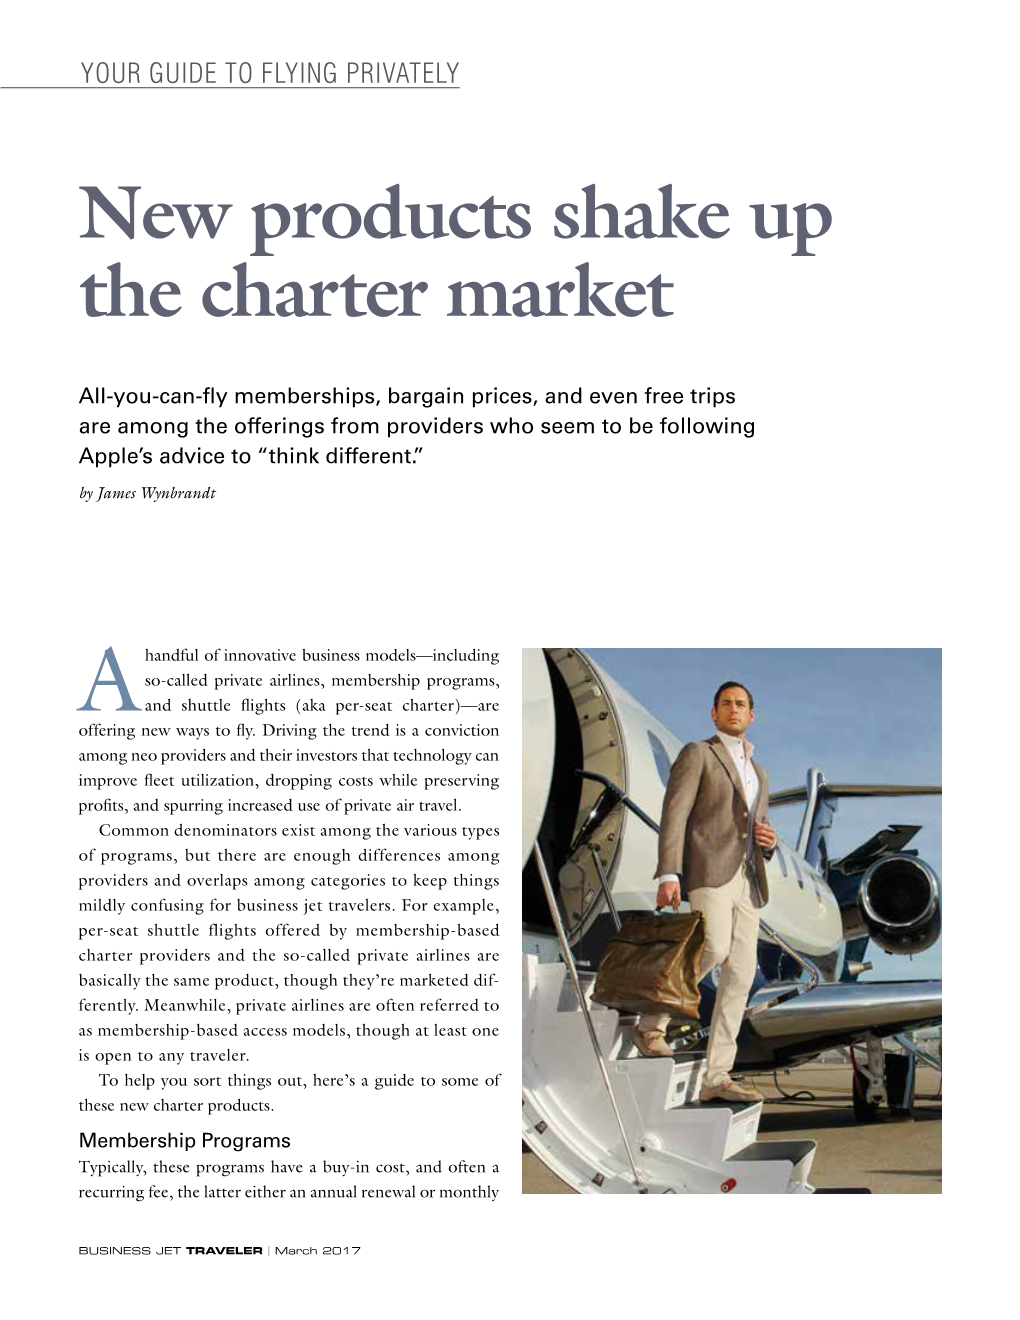 Charter Market